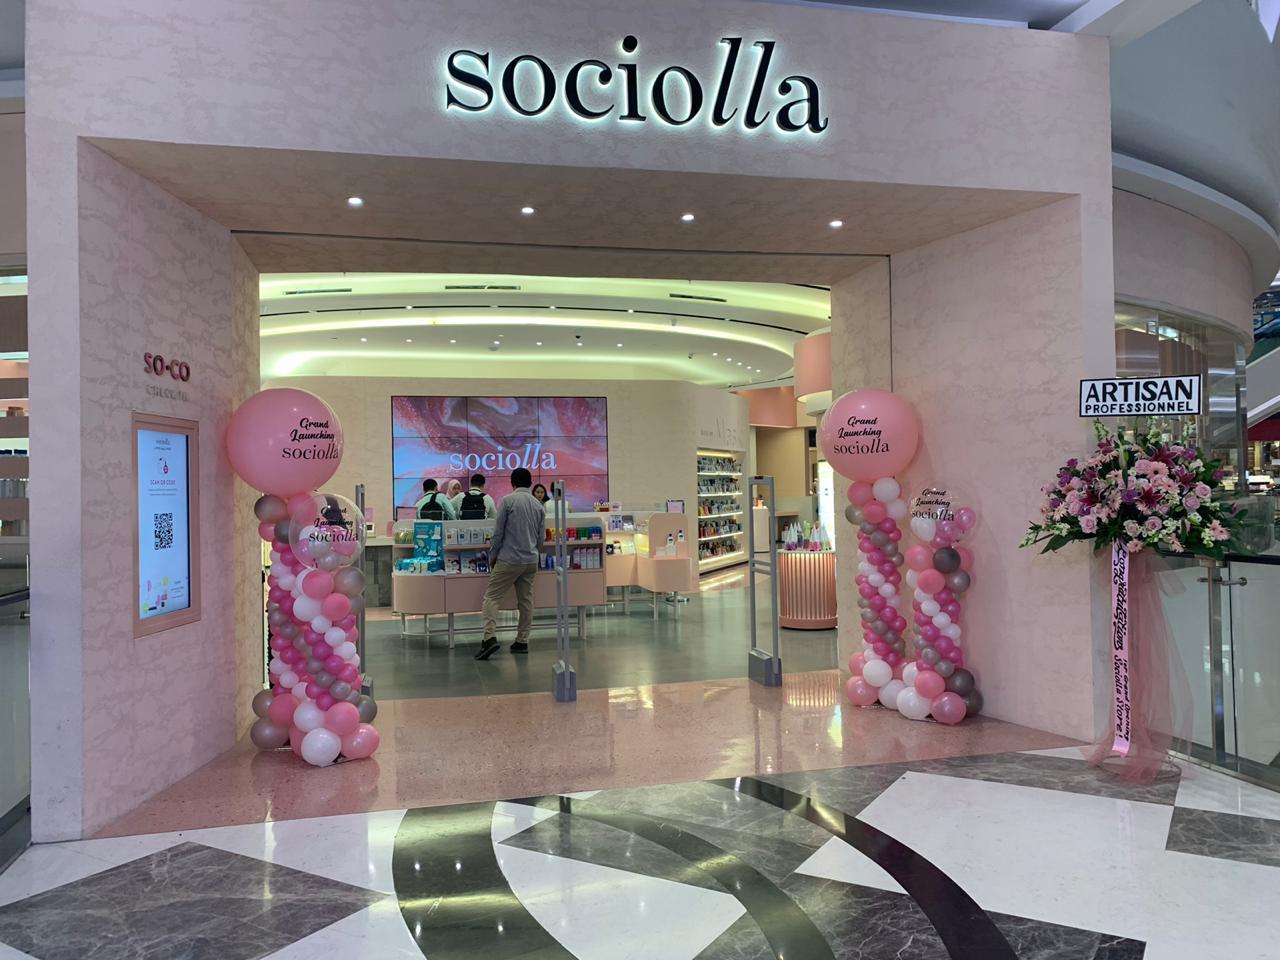 Sociolla shop front in lippo mall puri st. moritz